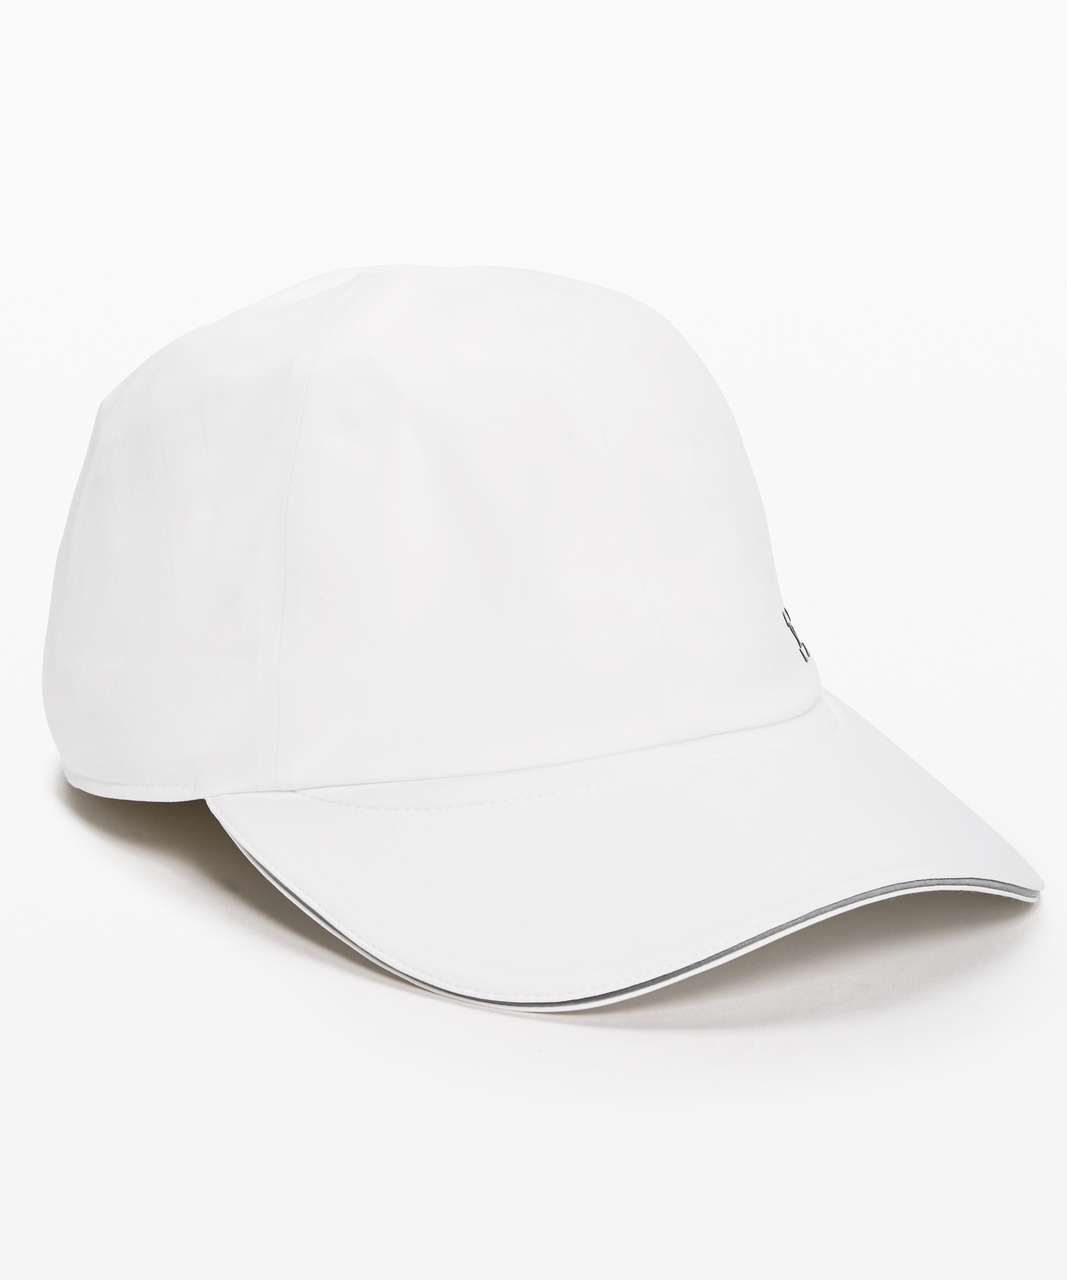 Lululemon Lightspeed Run Hat *Bonded - White